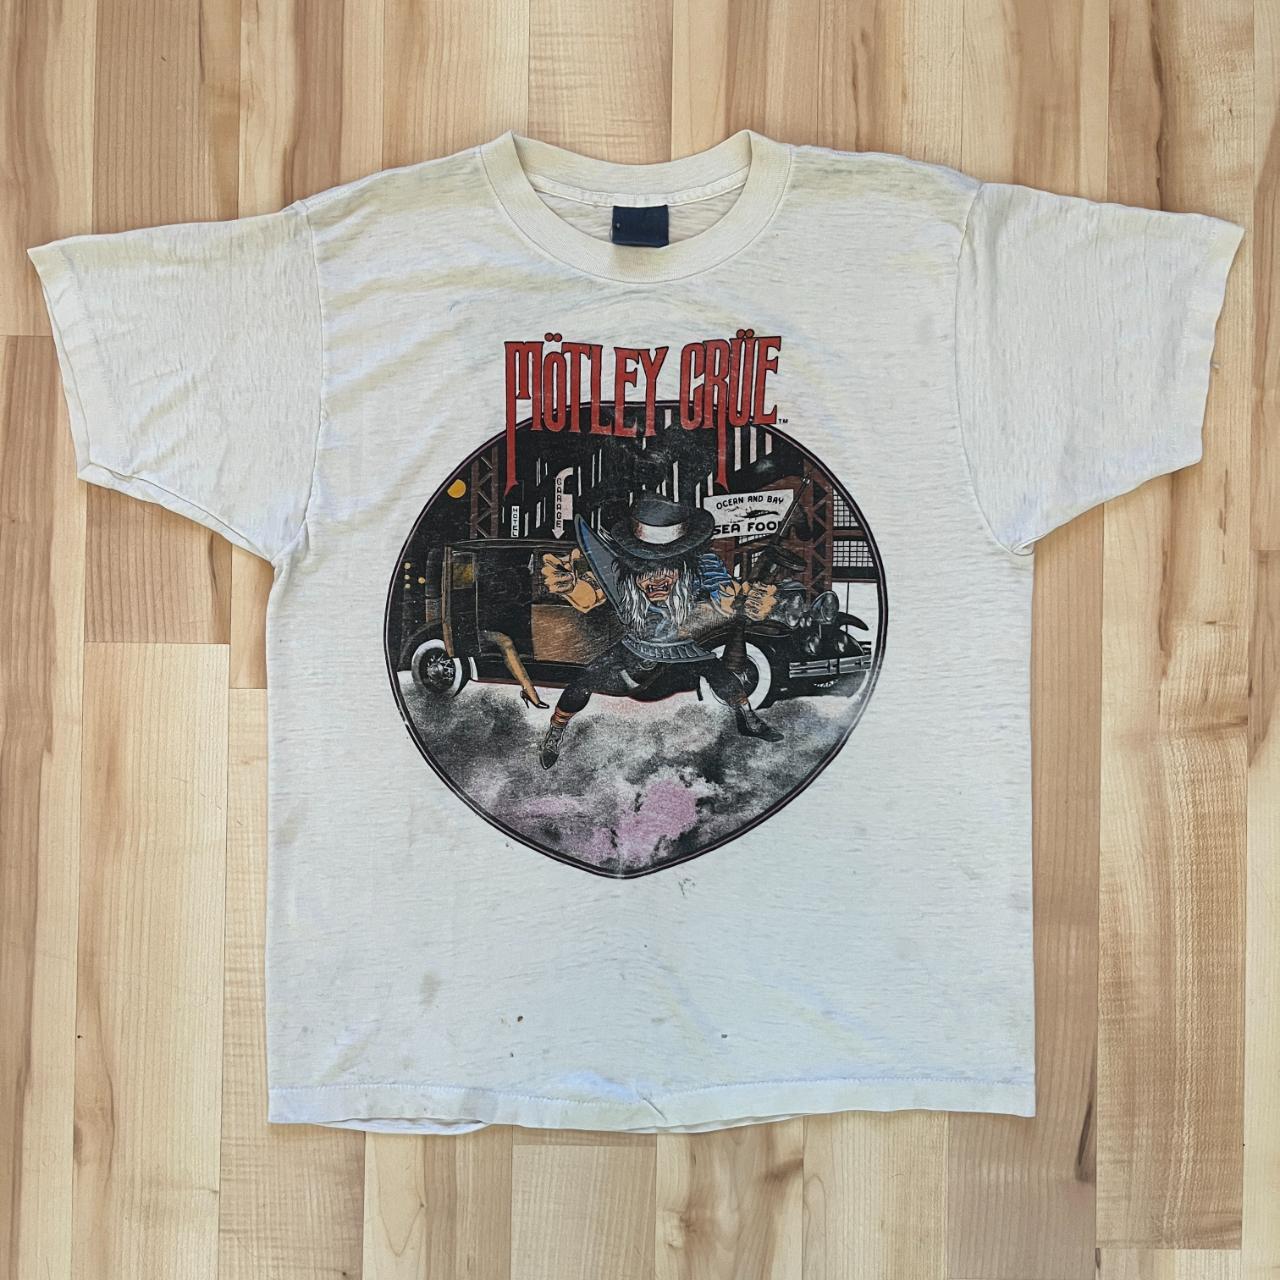 Live Aid Retro 1985 Concert T-Shirt - Men's & Women's Vintage